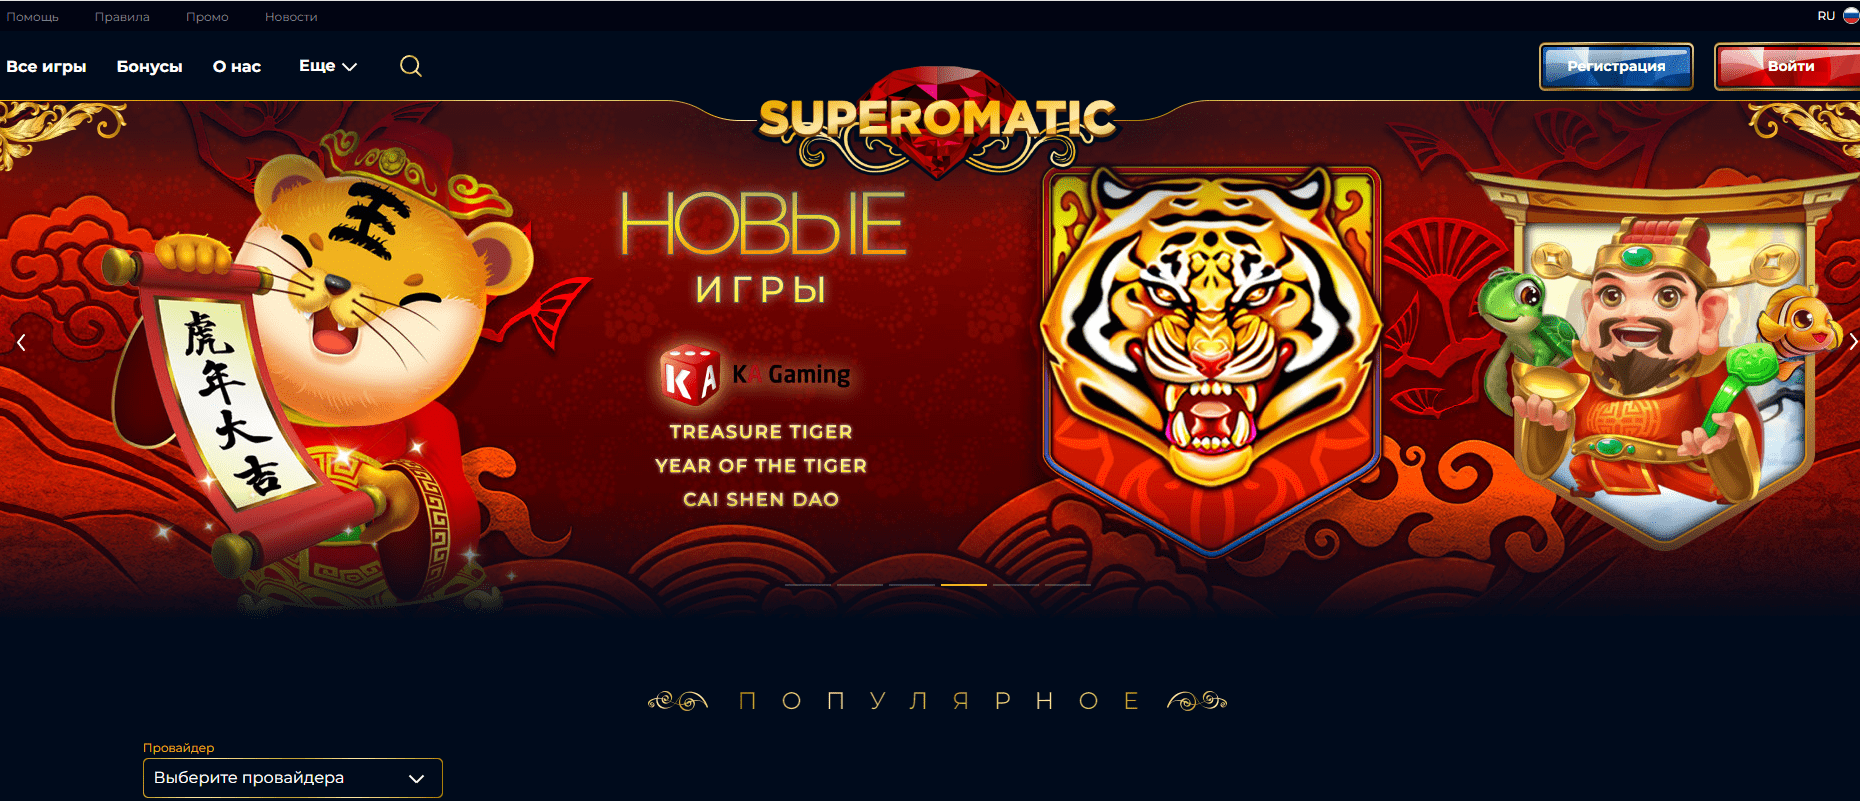 Главная страница официального сайта Casino Supermatic